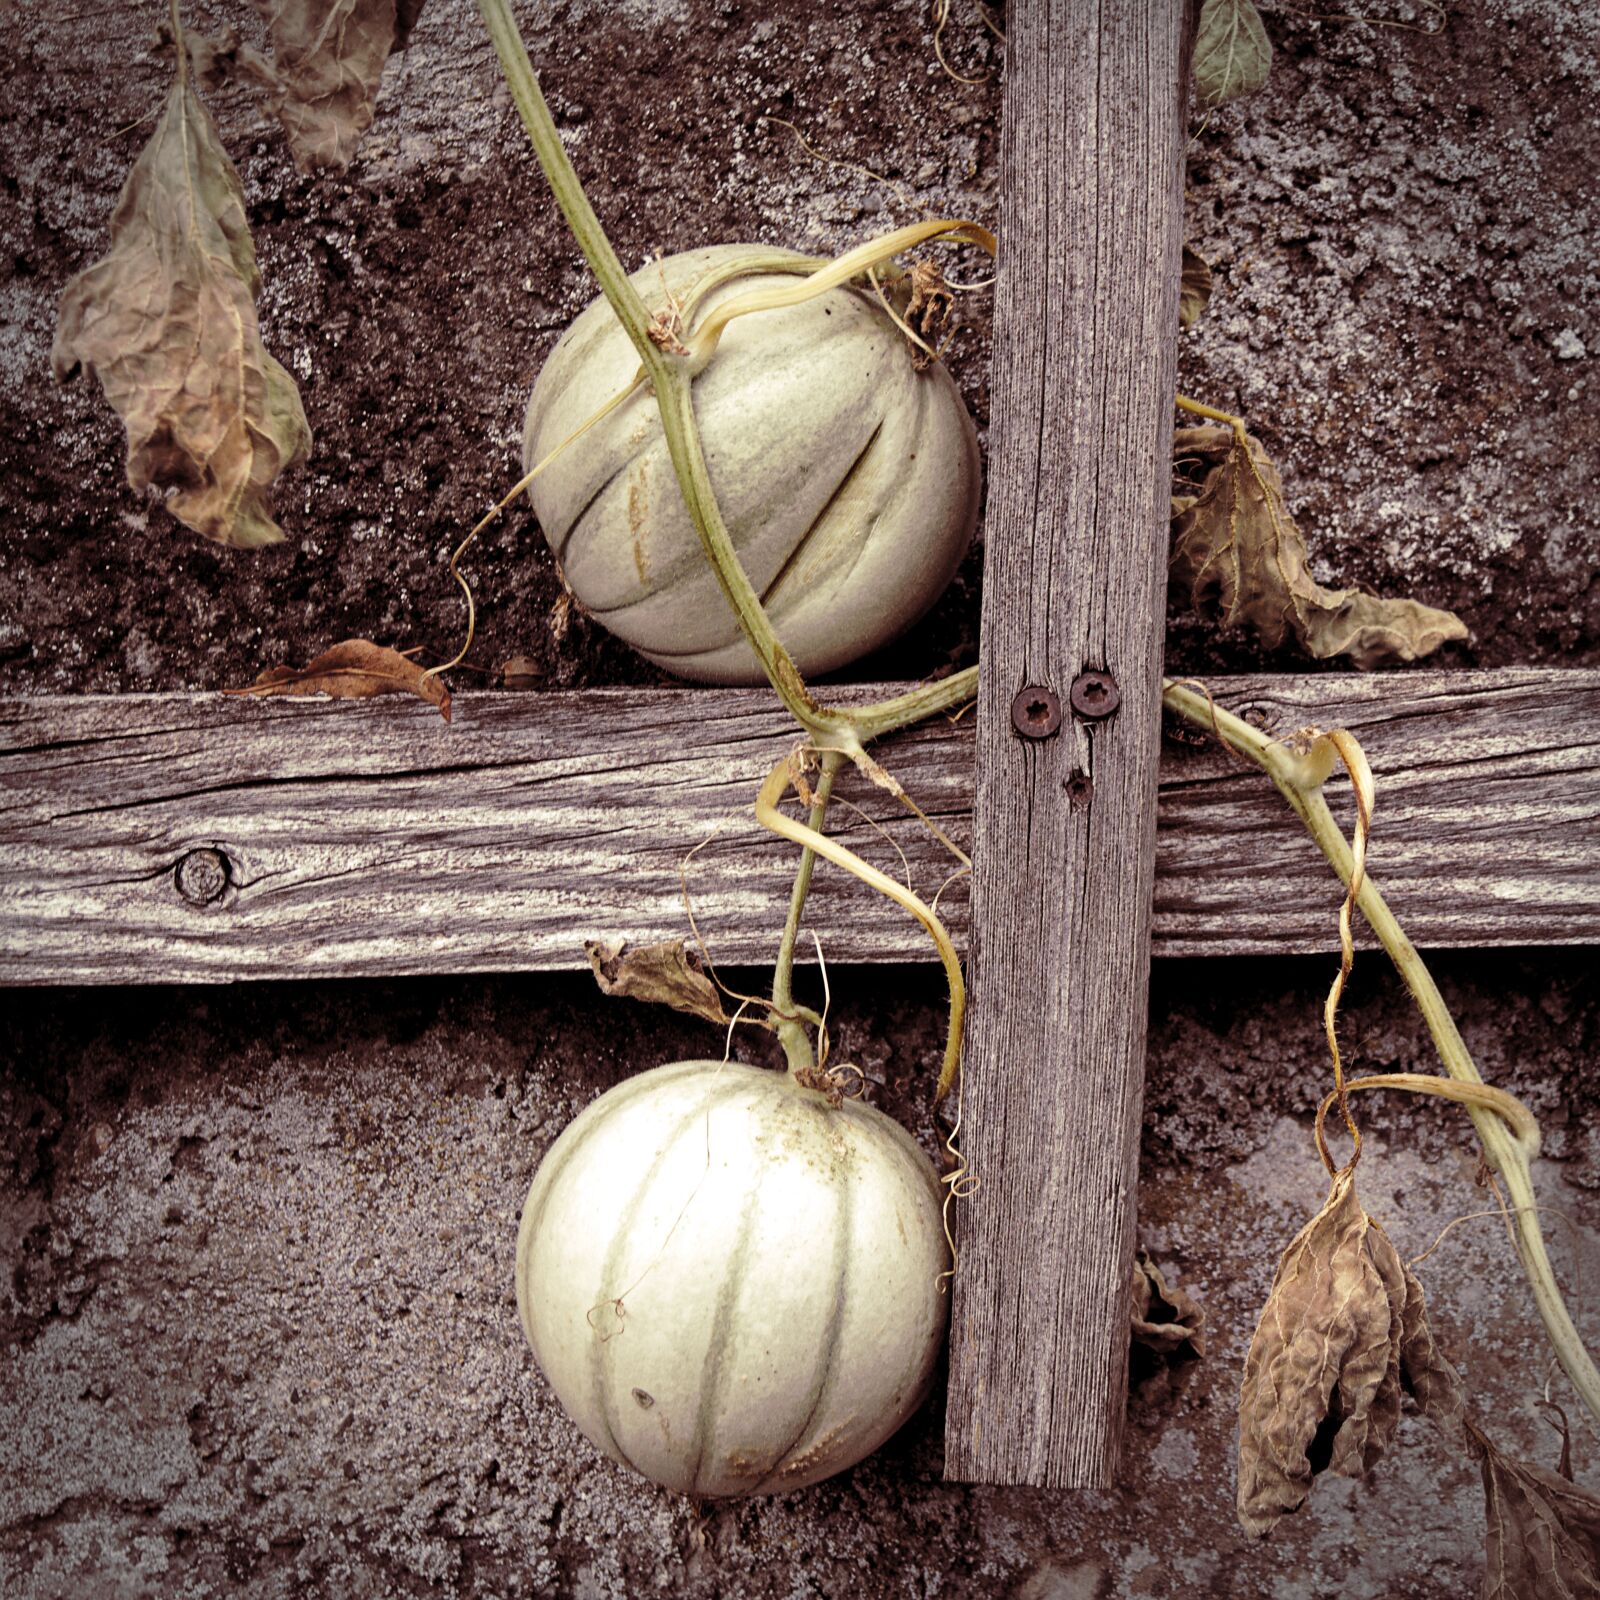 Canon EOS M5 sample photo. Autumn, garden, pumpkin photography